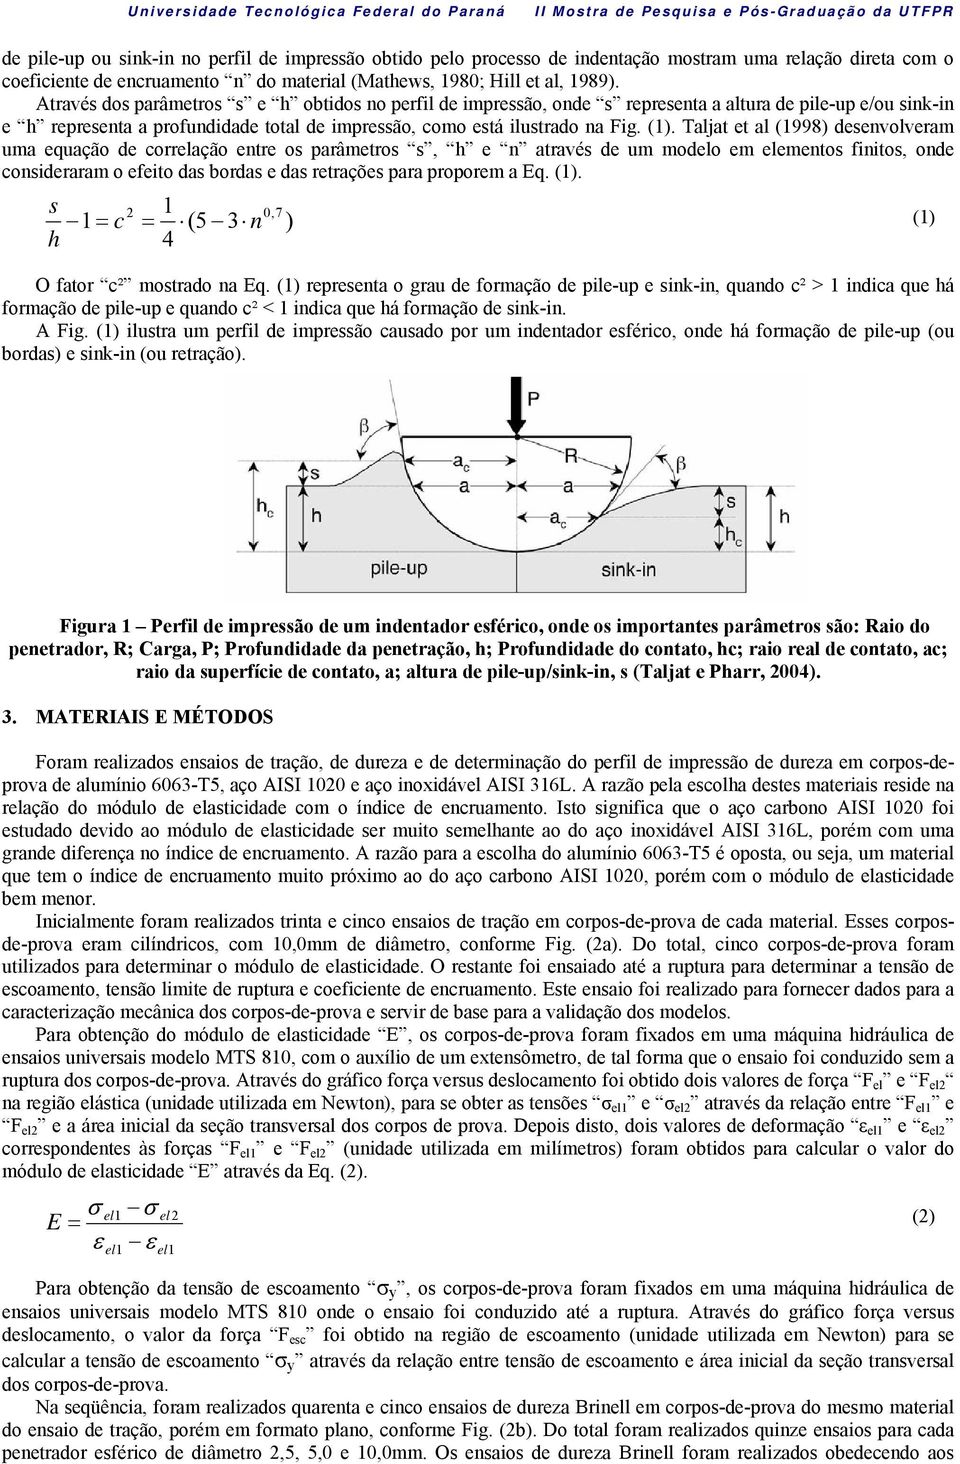 Taljat et al (1998) desenvolveram uma equação de correlação entre os parâmetros s, h e n através de um modelo em elementos finitos, onde consideraram o efeito das bordas e das retrações para proporem